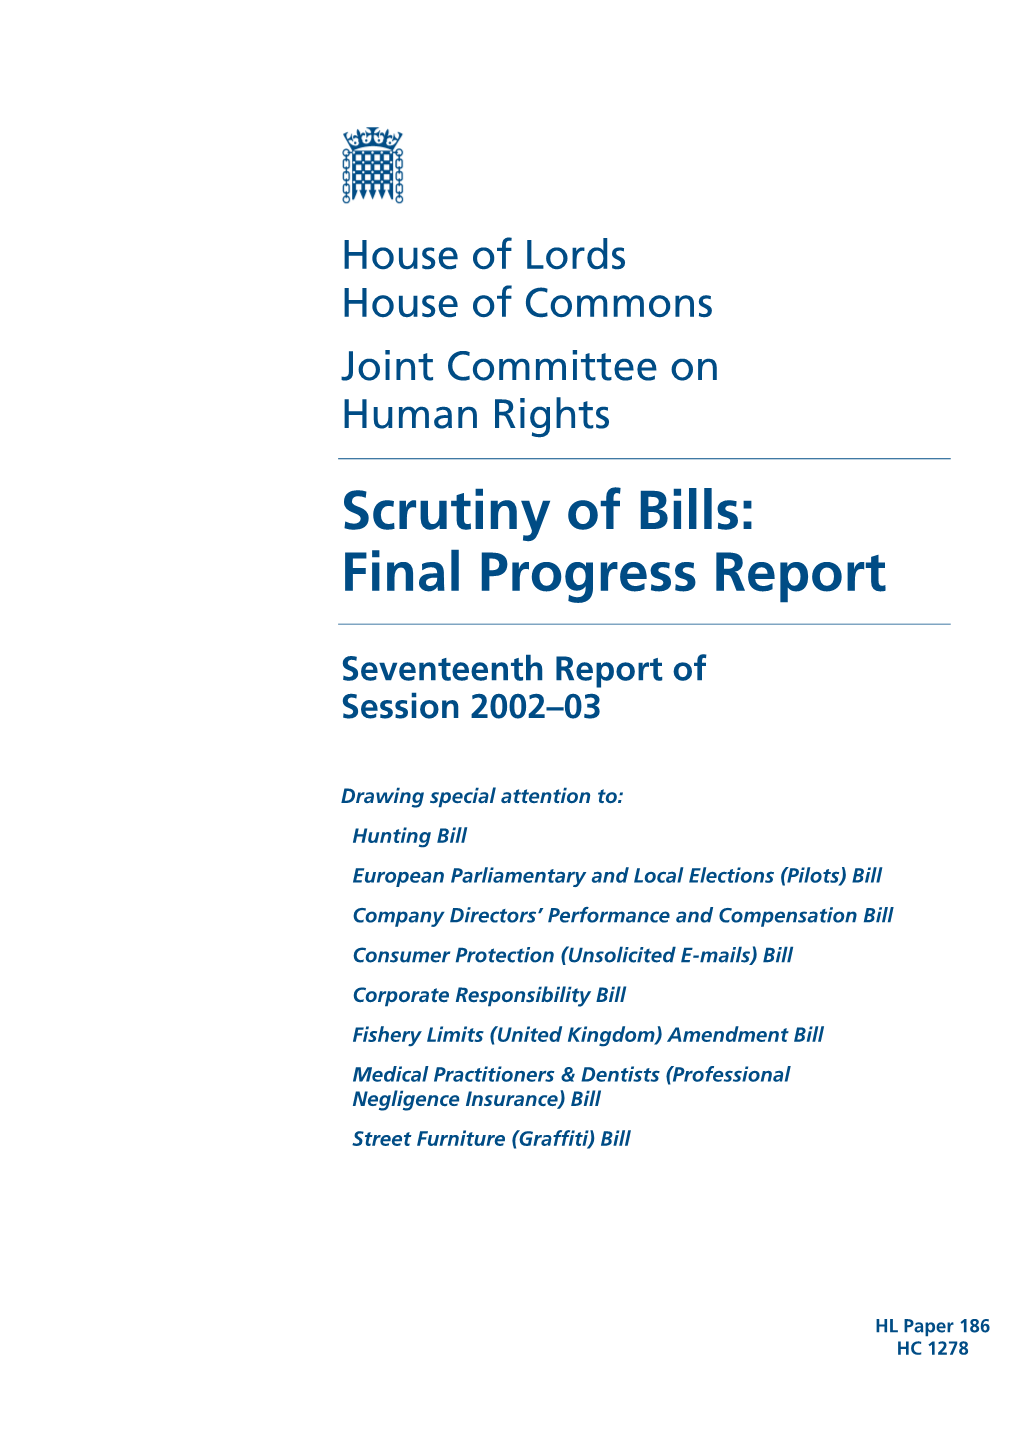 Scrutiny of Bills: Final Progress Report